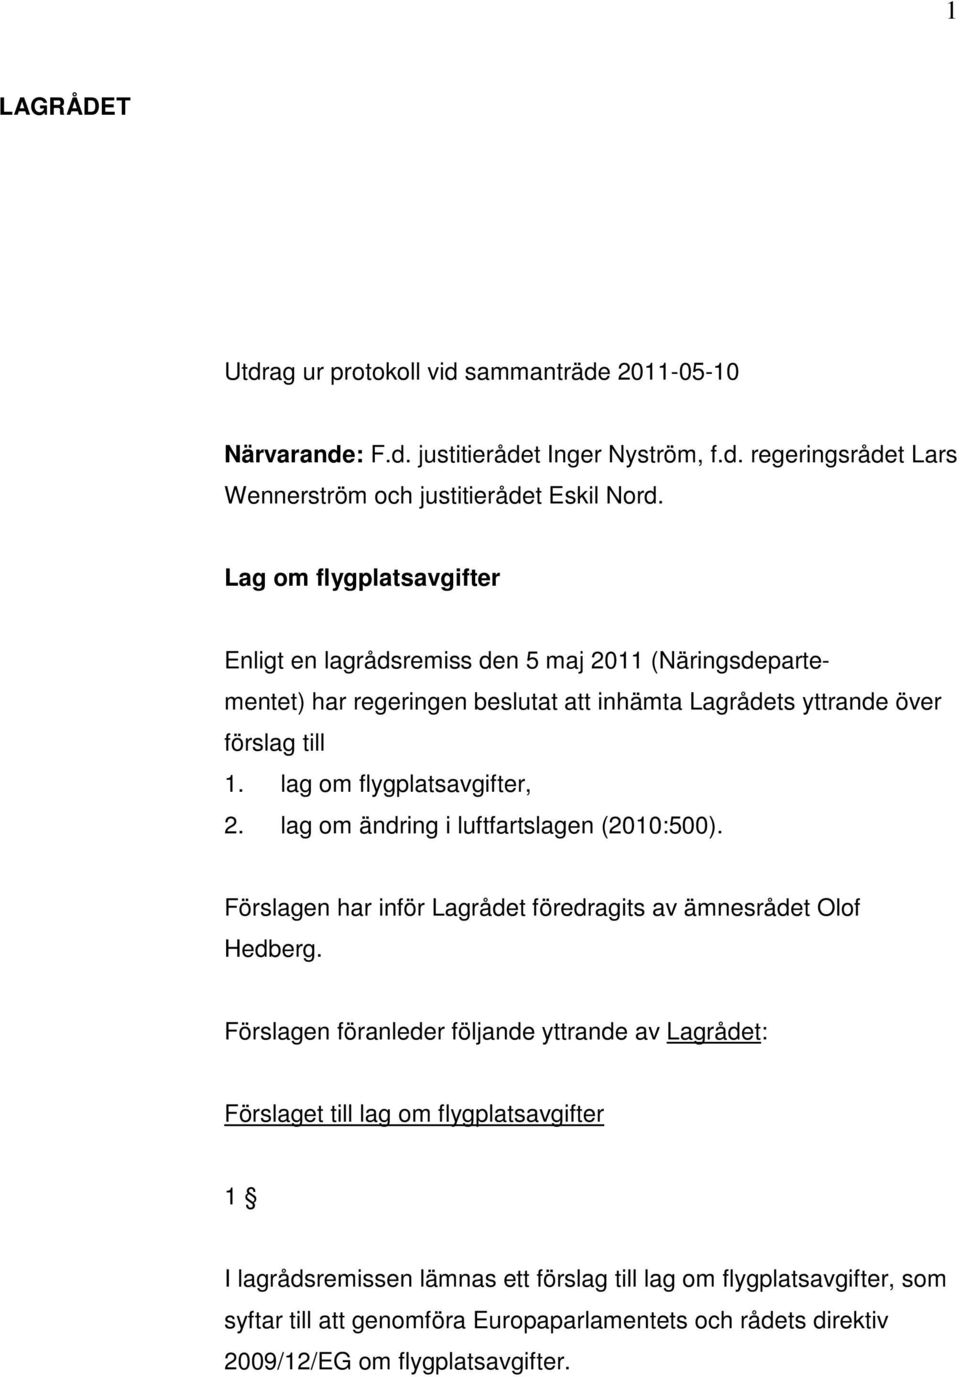 lag om flygplatsavgifter, 2. lag om ändring i luftfartslagen (2010:500). Förslagen har inför Lagrådet föredragits av ämnesrådet Olof Hedberg.